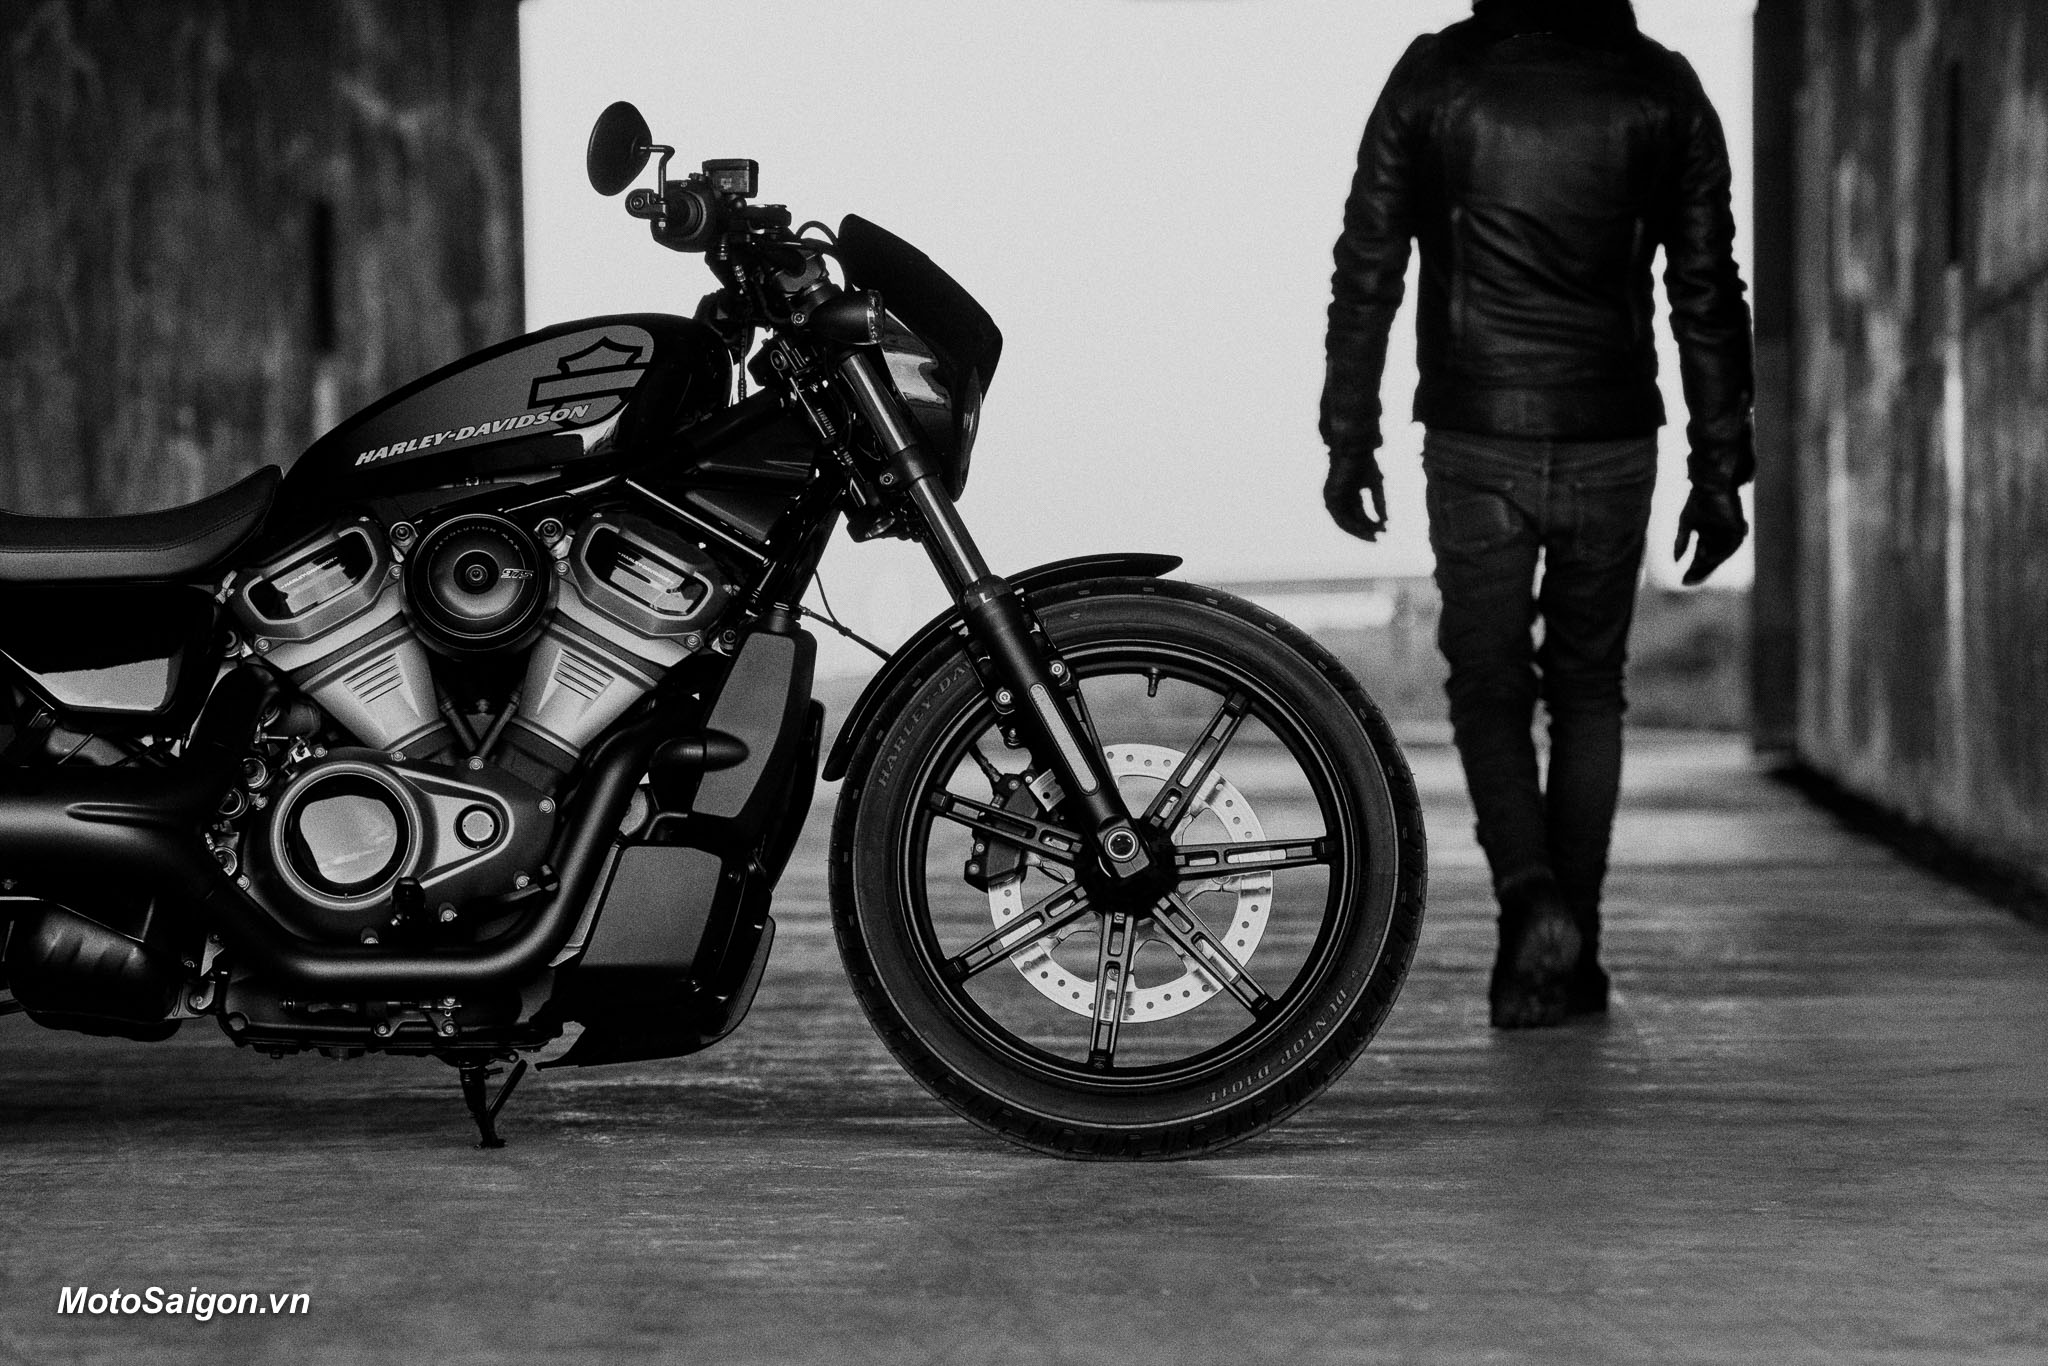 Nightster 2022 gương mặt mới của dòng Sportster đã được Harley-Davidson công bố giá bán